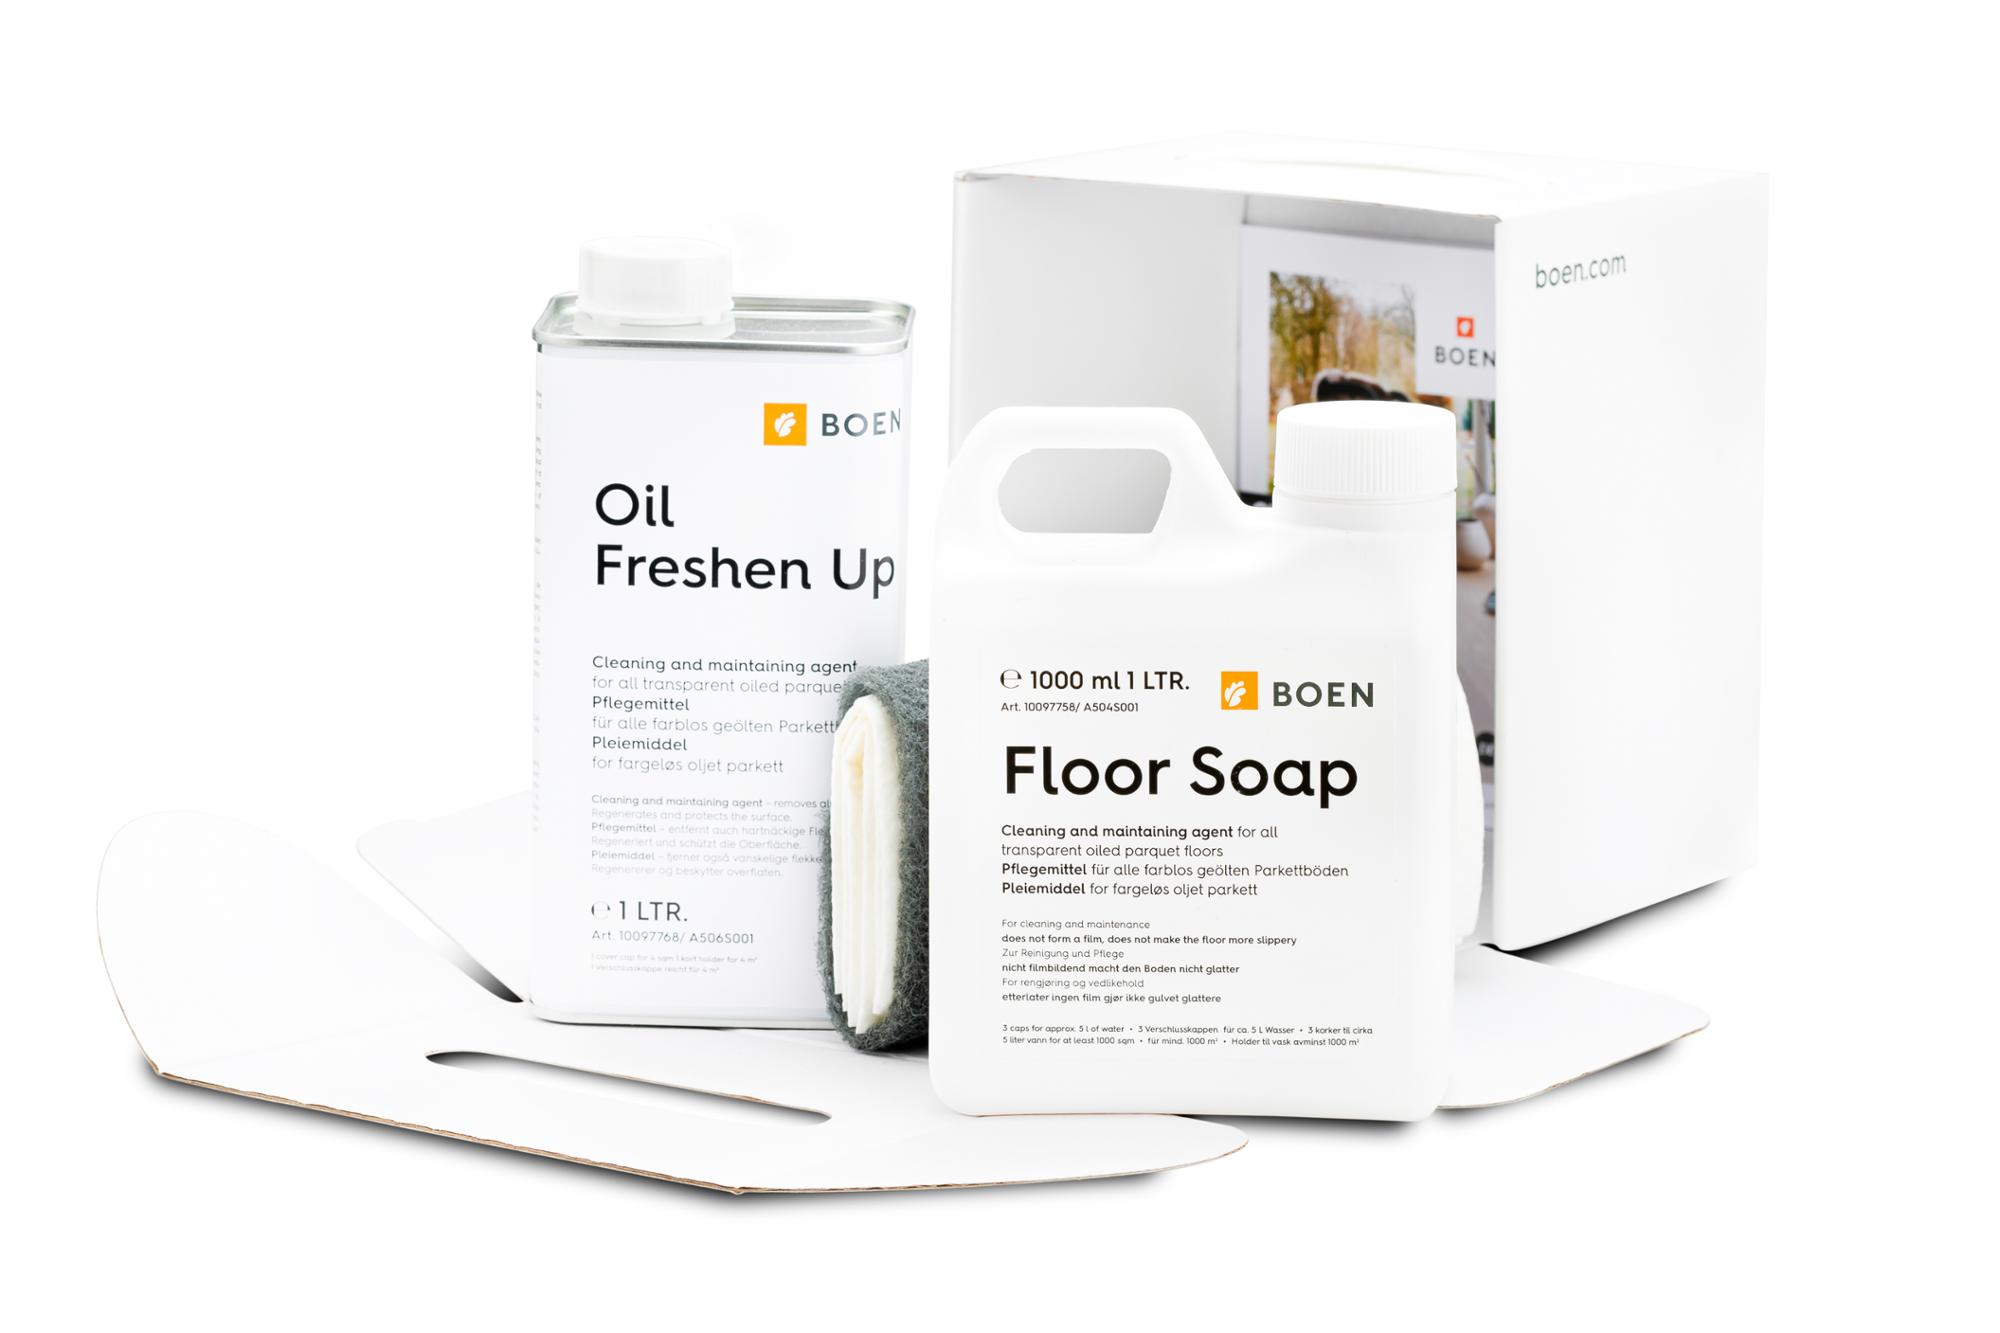 BOEN Reinigungs- und Pflegeset für transparent geölte Böden

Inhalt: 1 l Floor Soap und 1 l Oil Freshen Up.